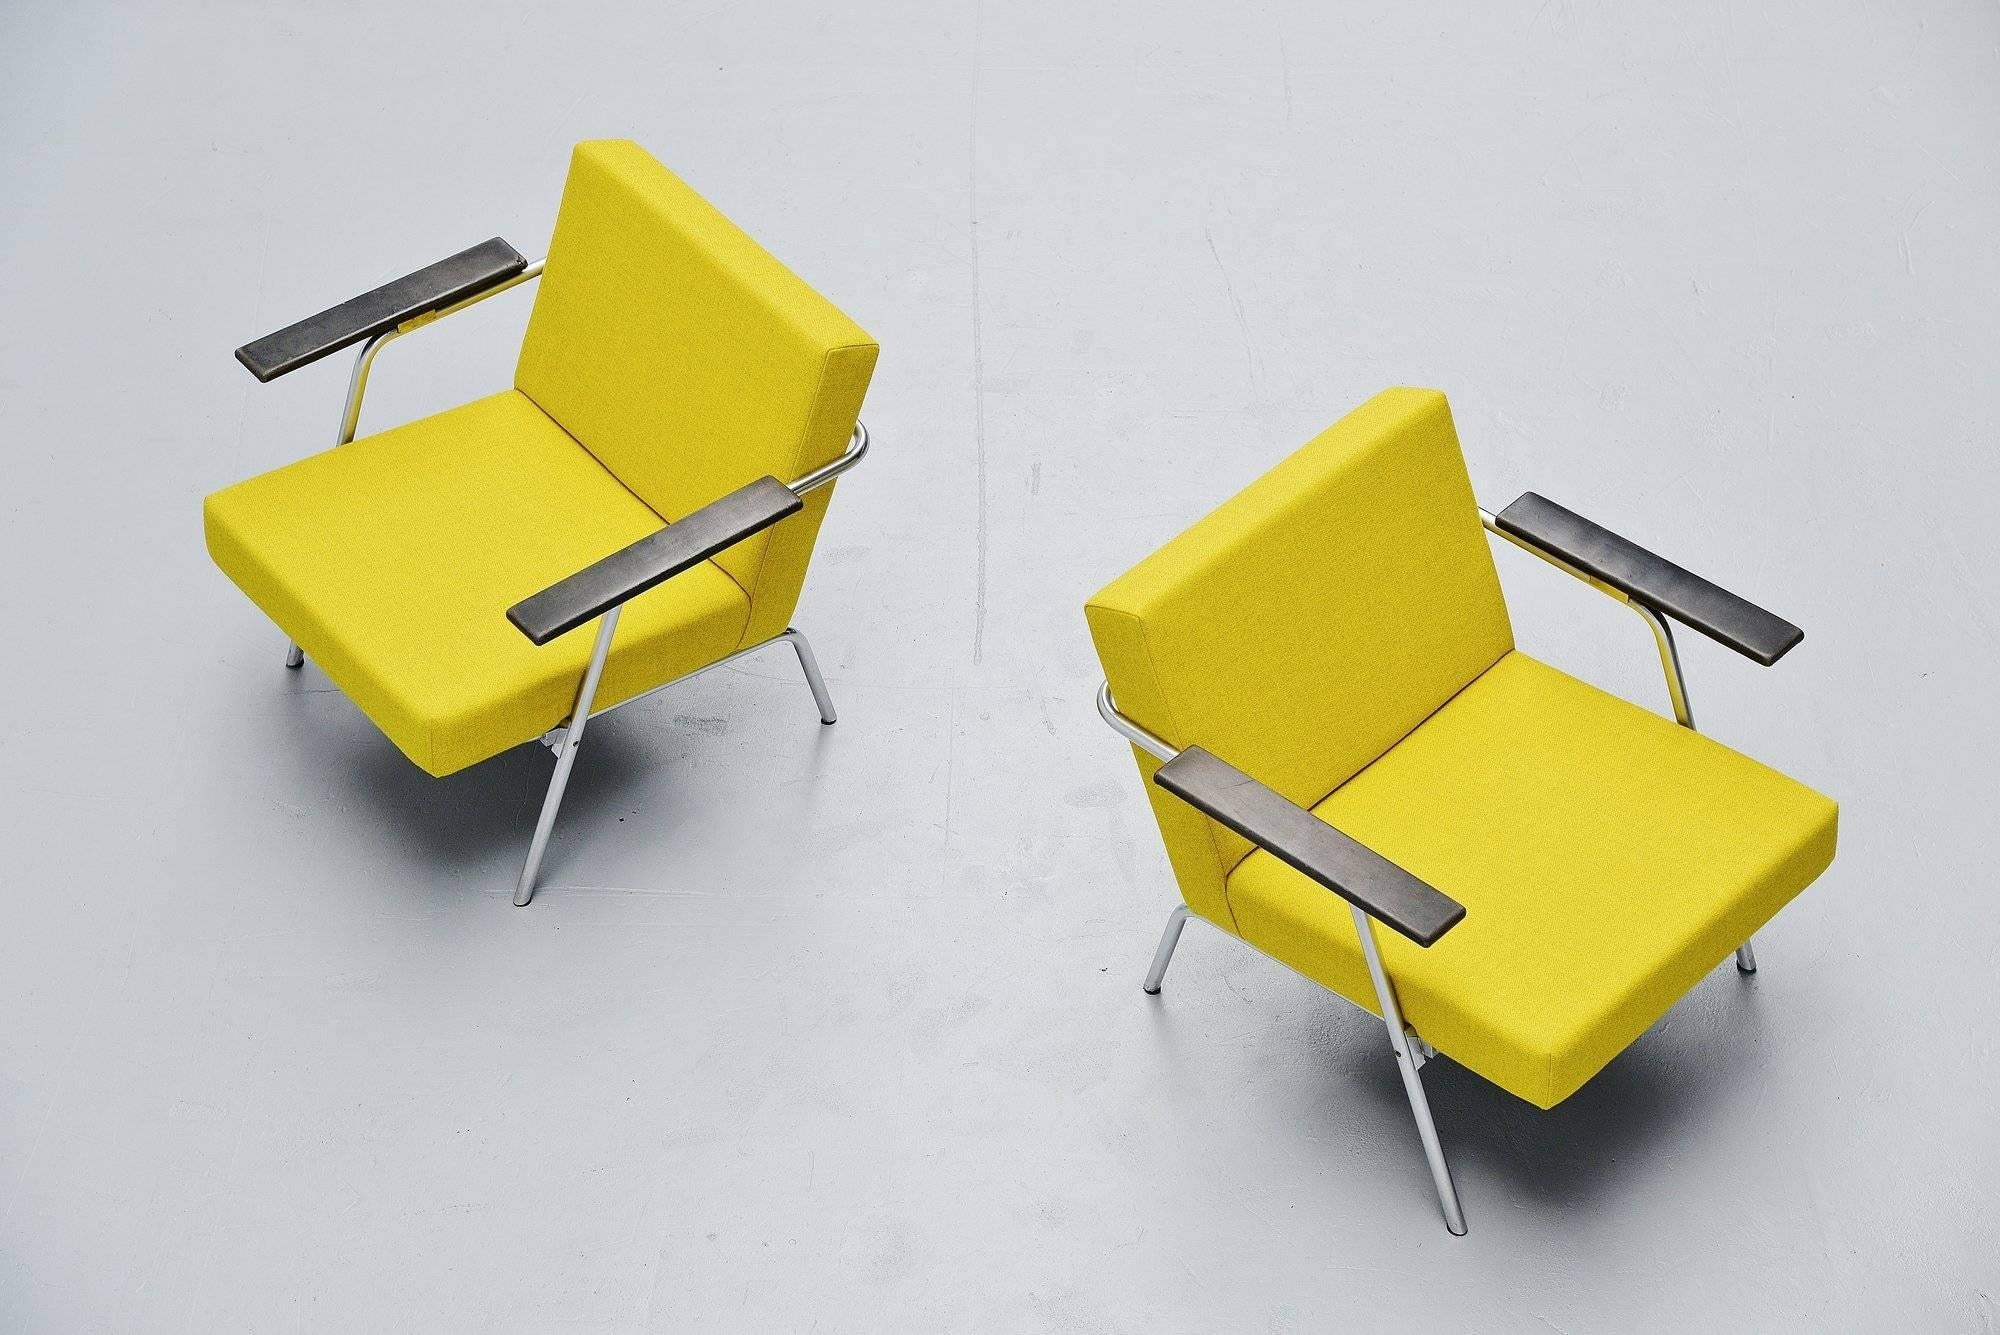 Seltenes und erstaunliches Paar Sessel von Martin Visser für 't Spectrum, Holland, 1964. Bei diesen Stühlen handelt es sich um das Modell SZ02, das in mehreren Büchern und Katalogen von 't Spectrum als Modell SZ02 dokumentiert ist. Sie wurden nur